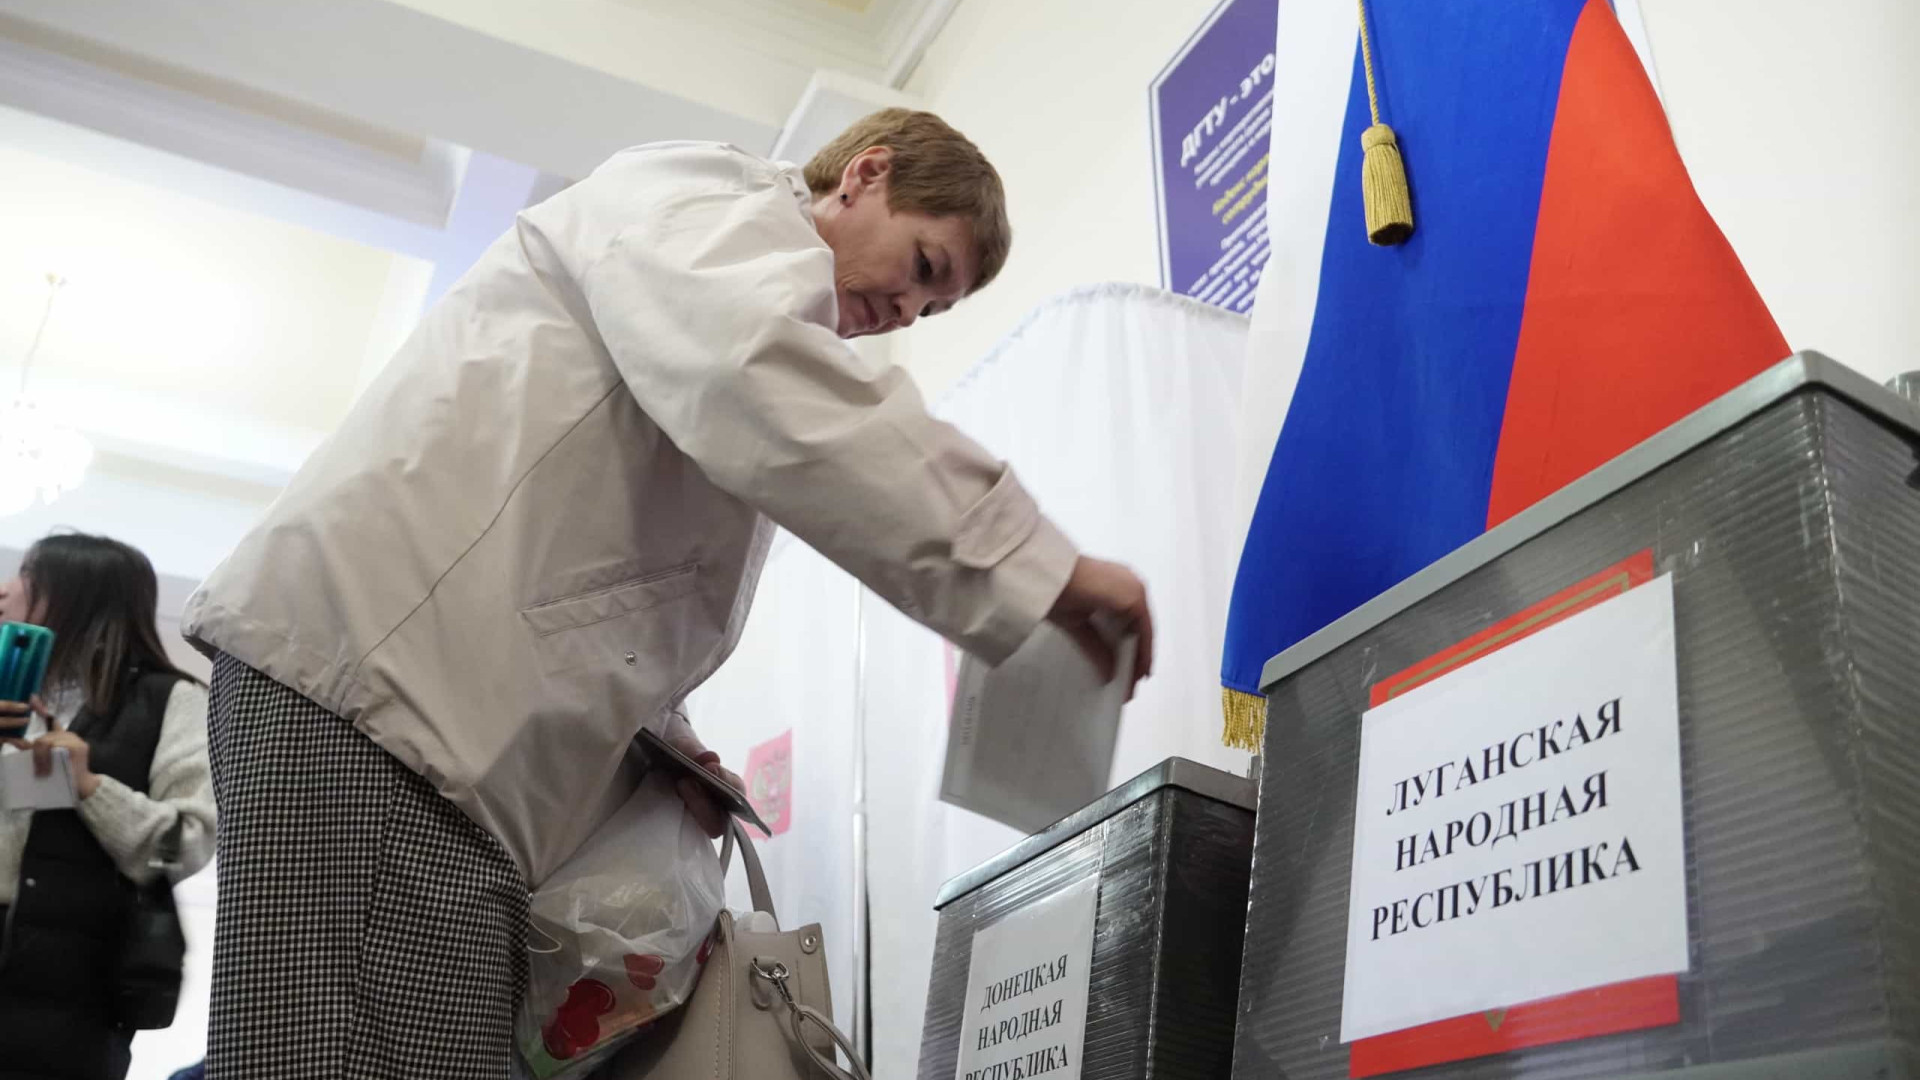 Governador de Lugansk denuncia manipulação de participação no referendo